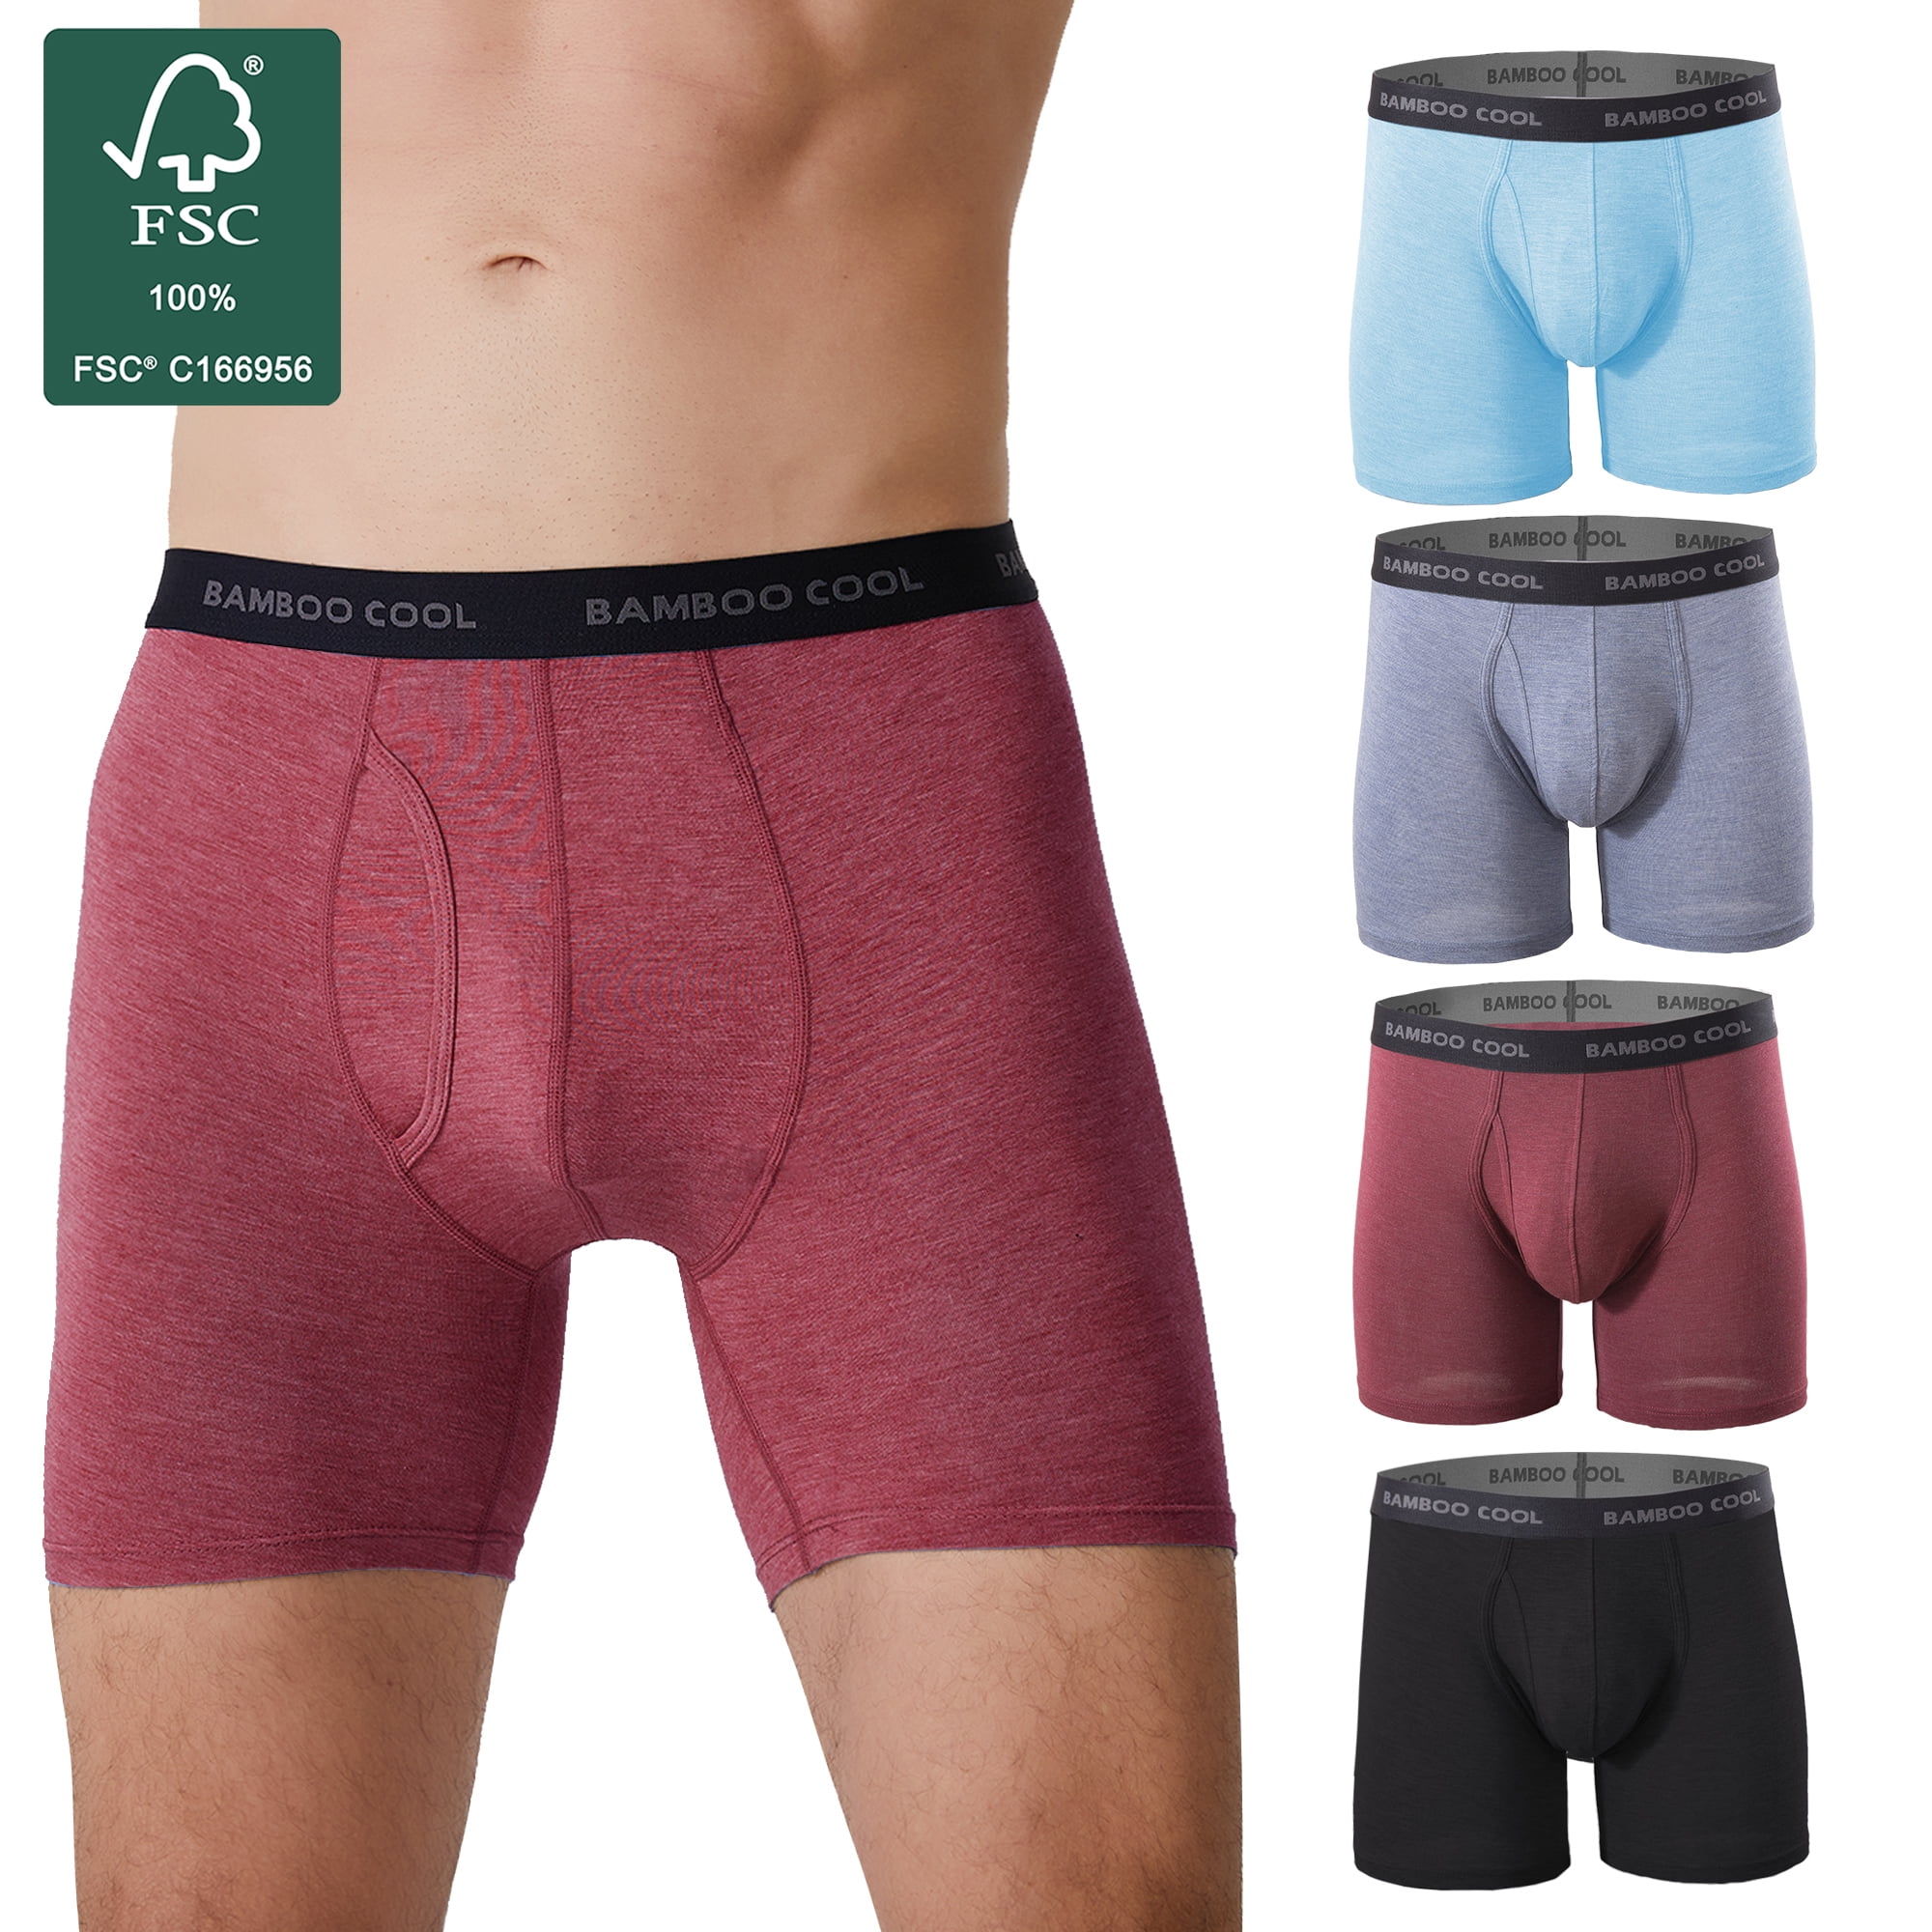 Bamboo underwear or polyester underwear?